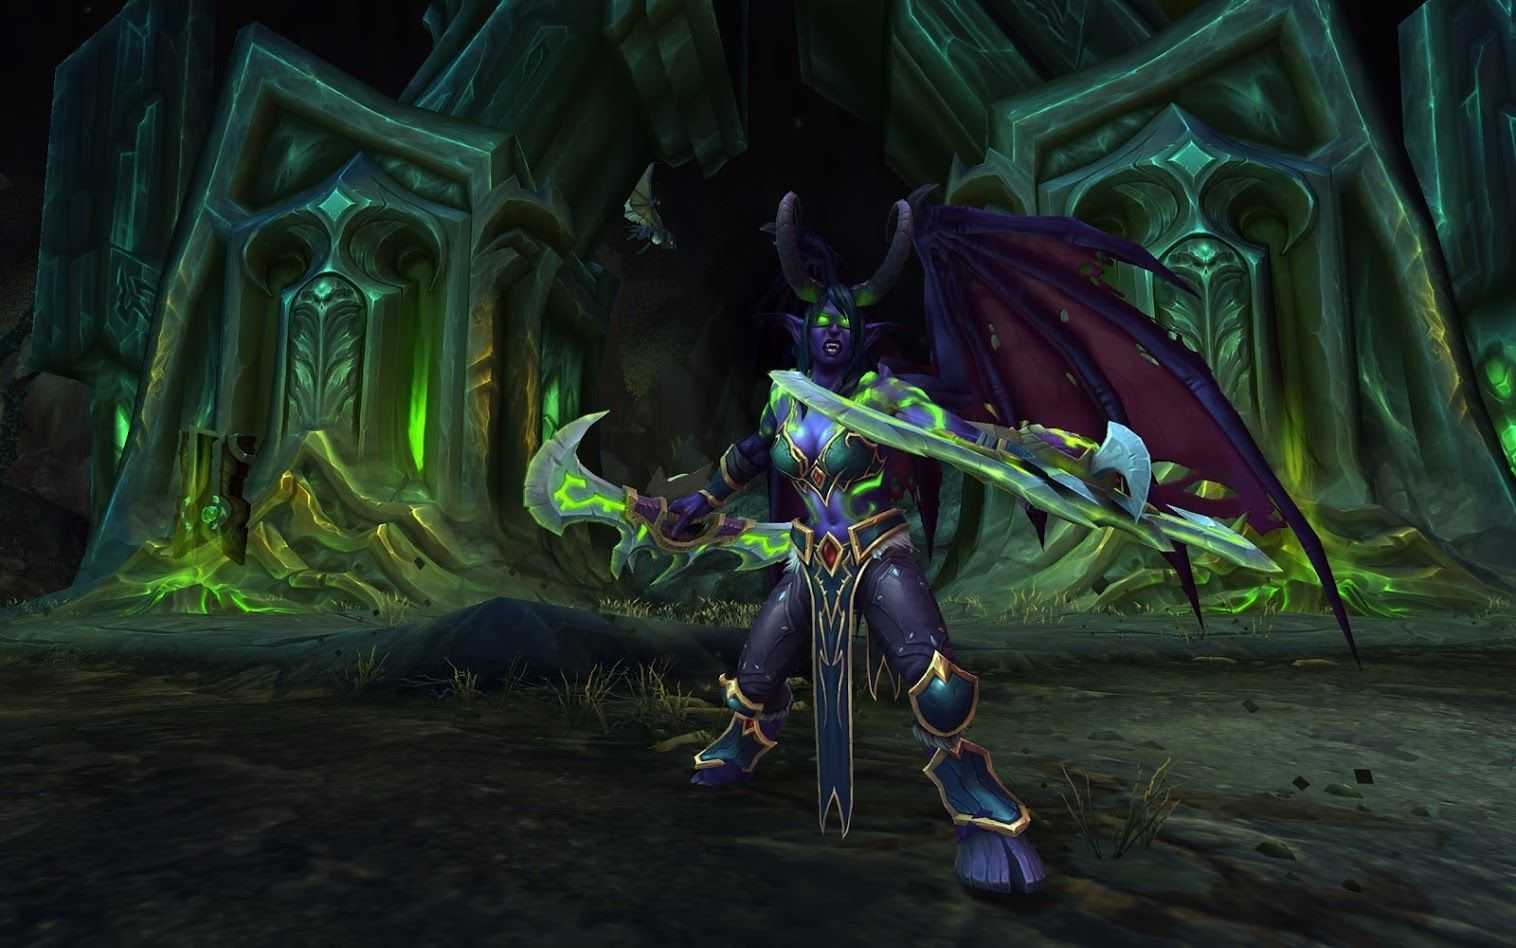 Warcraft 3: reforged — прохождение бонусной кампании основание дуротара | rbk games